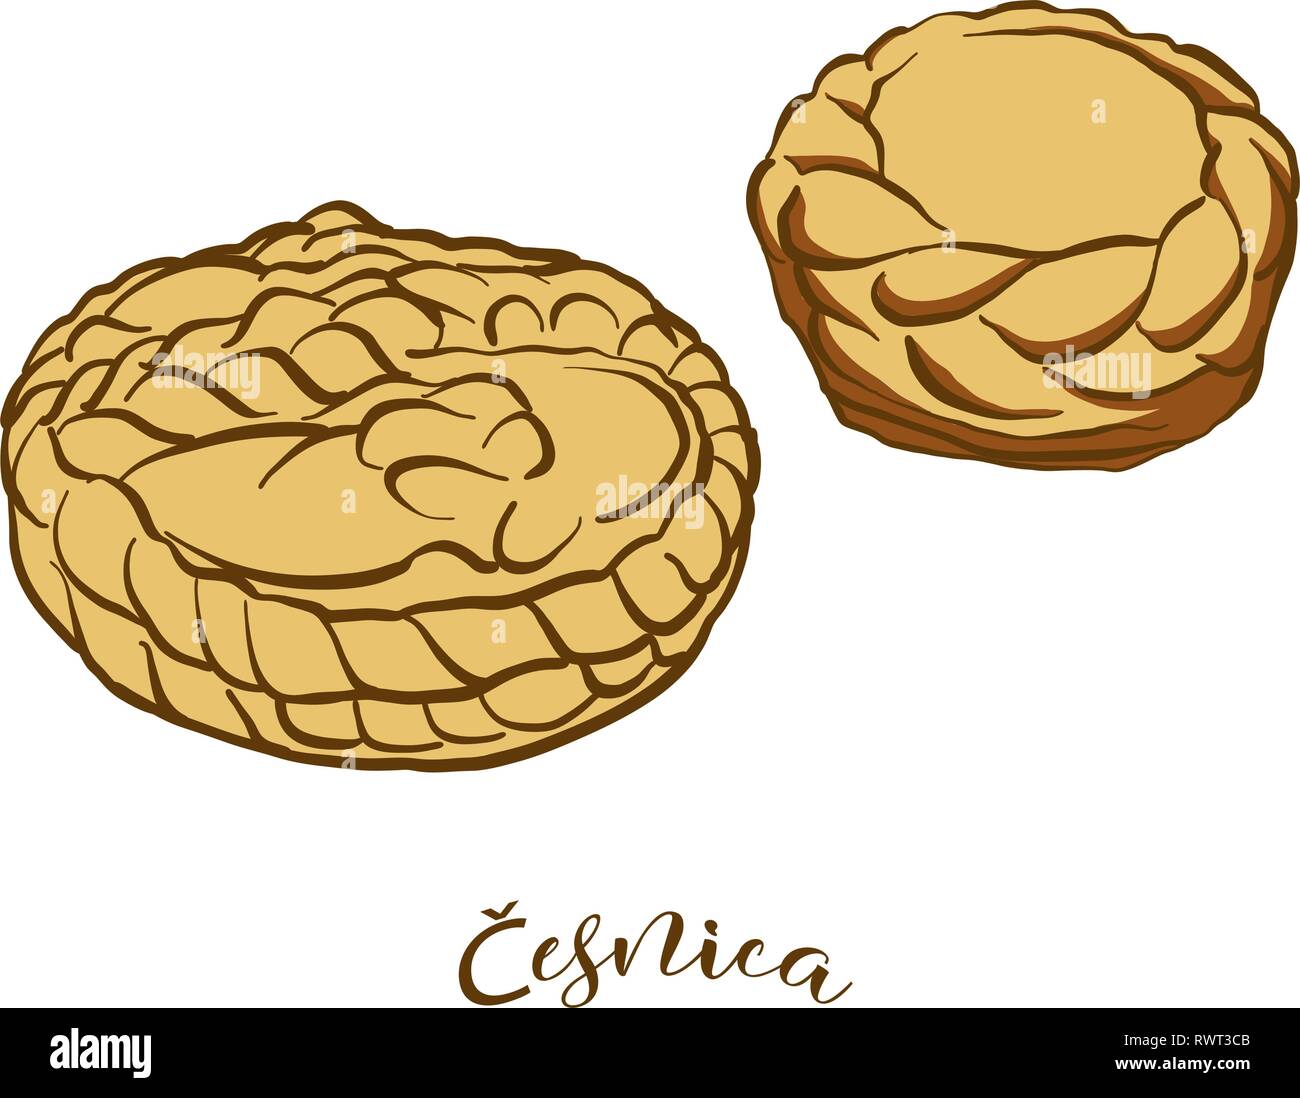 Farbige Skizzen von Cesnica Brot. Vektor Zeichnung von Soda Brot essen, in der Regel in Serbien bekannt. Farbige Brot Abbildung Serie. Stock Vektor